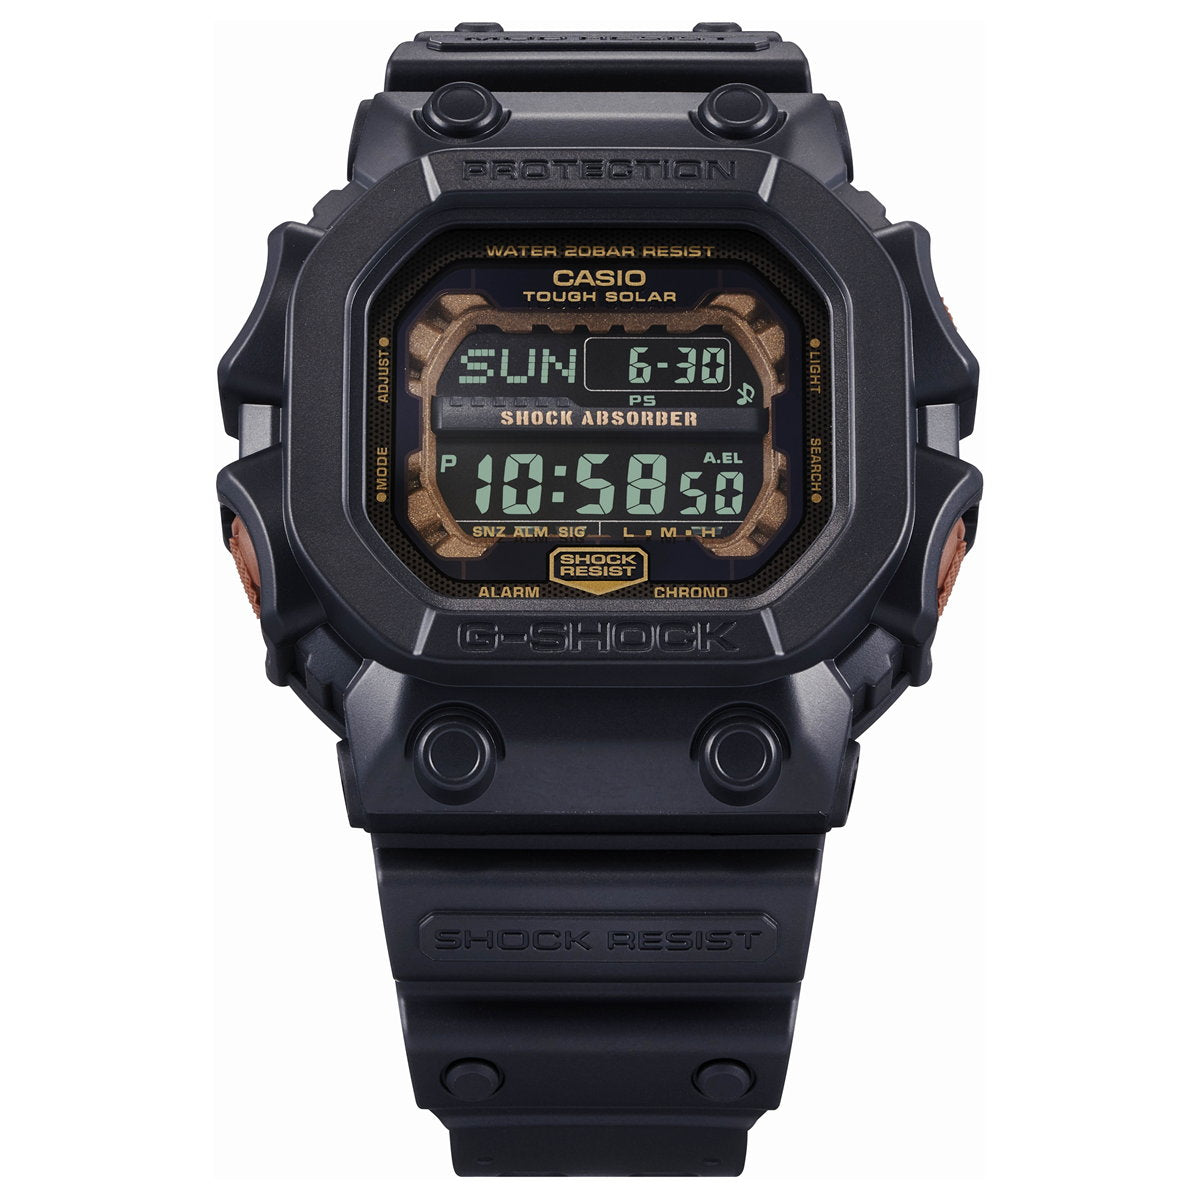 G-SHOCK デジタル カシオ Gショック CASIO ソーラー 腕時計 メンズ GX-56RC-1JF TEAL ANDBROWN COLOR ビッグケース